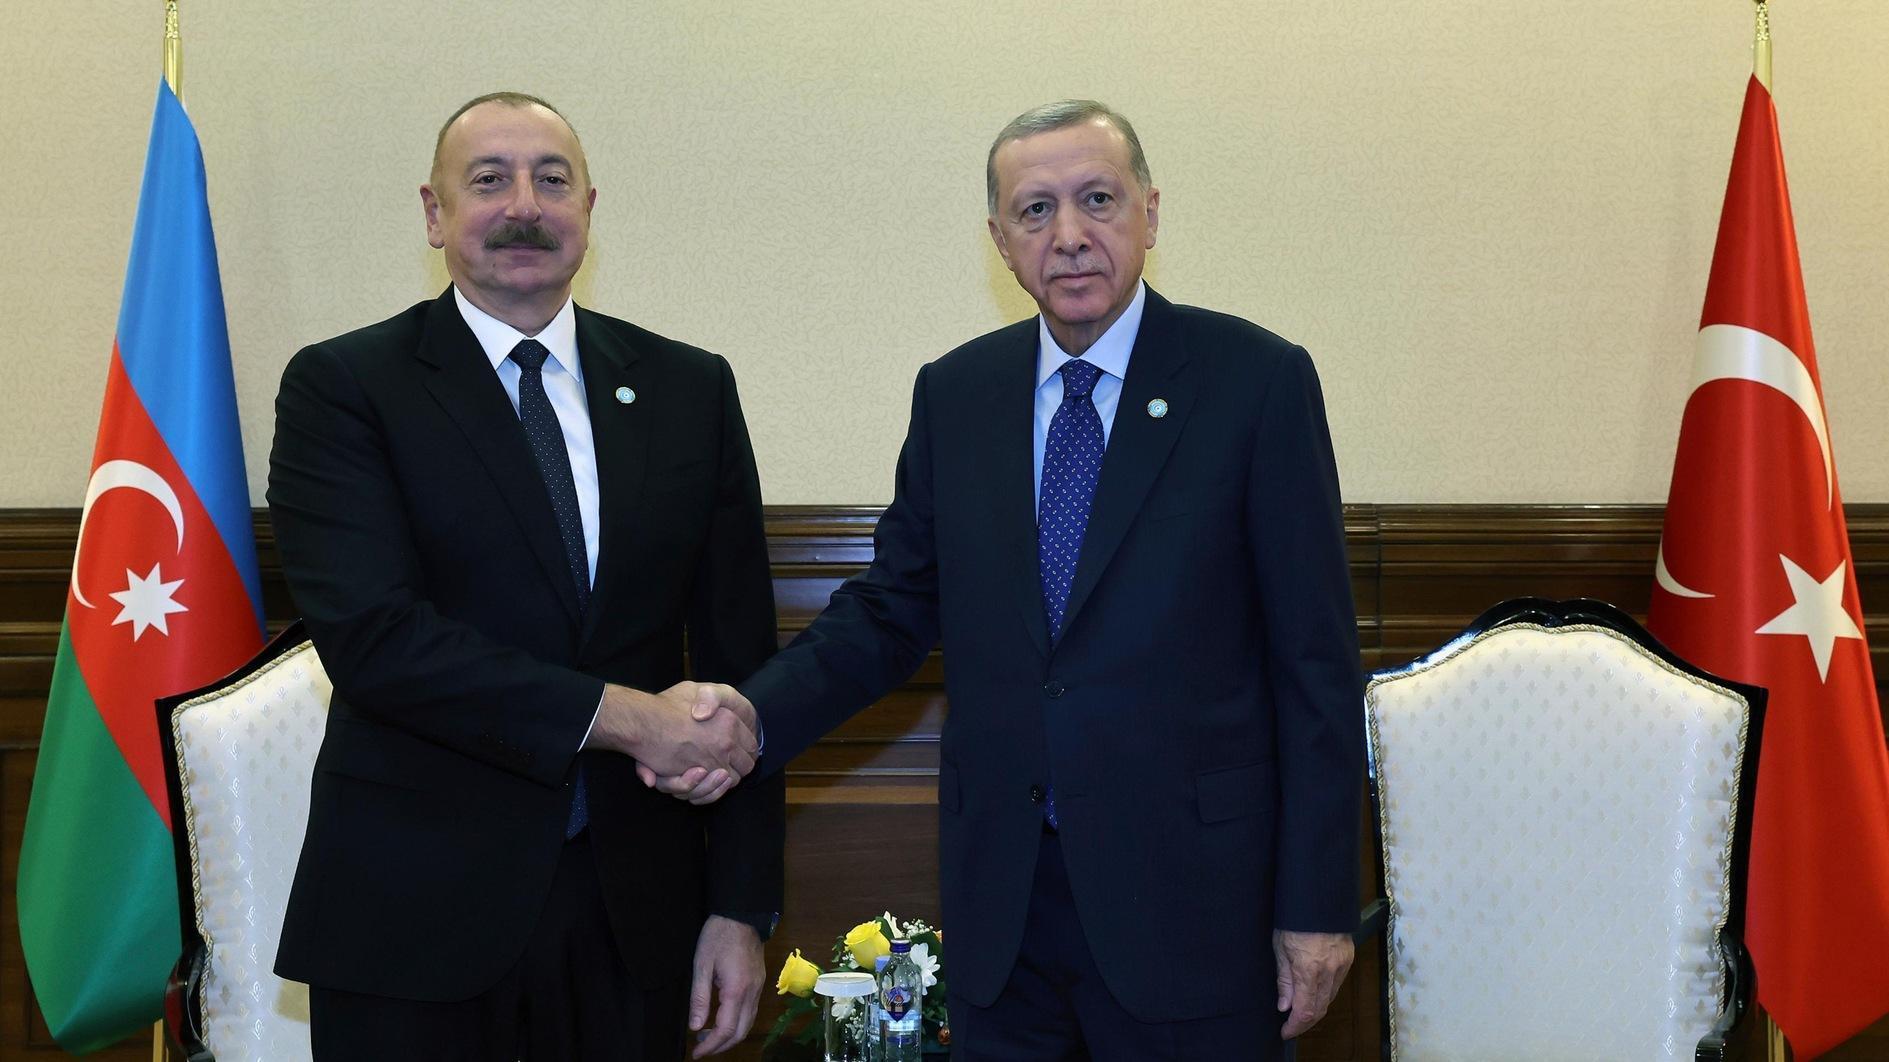 Erdoğan feliciteert Azerbeidzjan Aliyev met zijn herverkiezingswinst